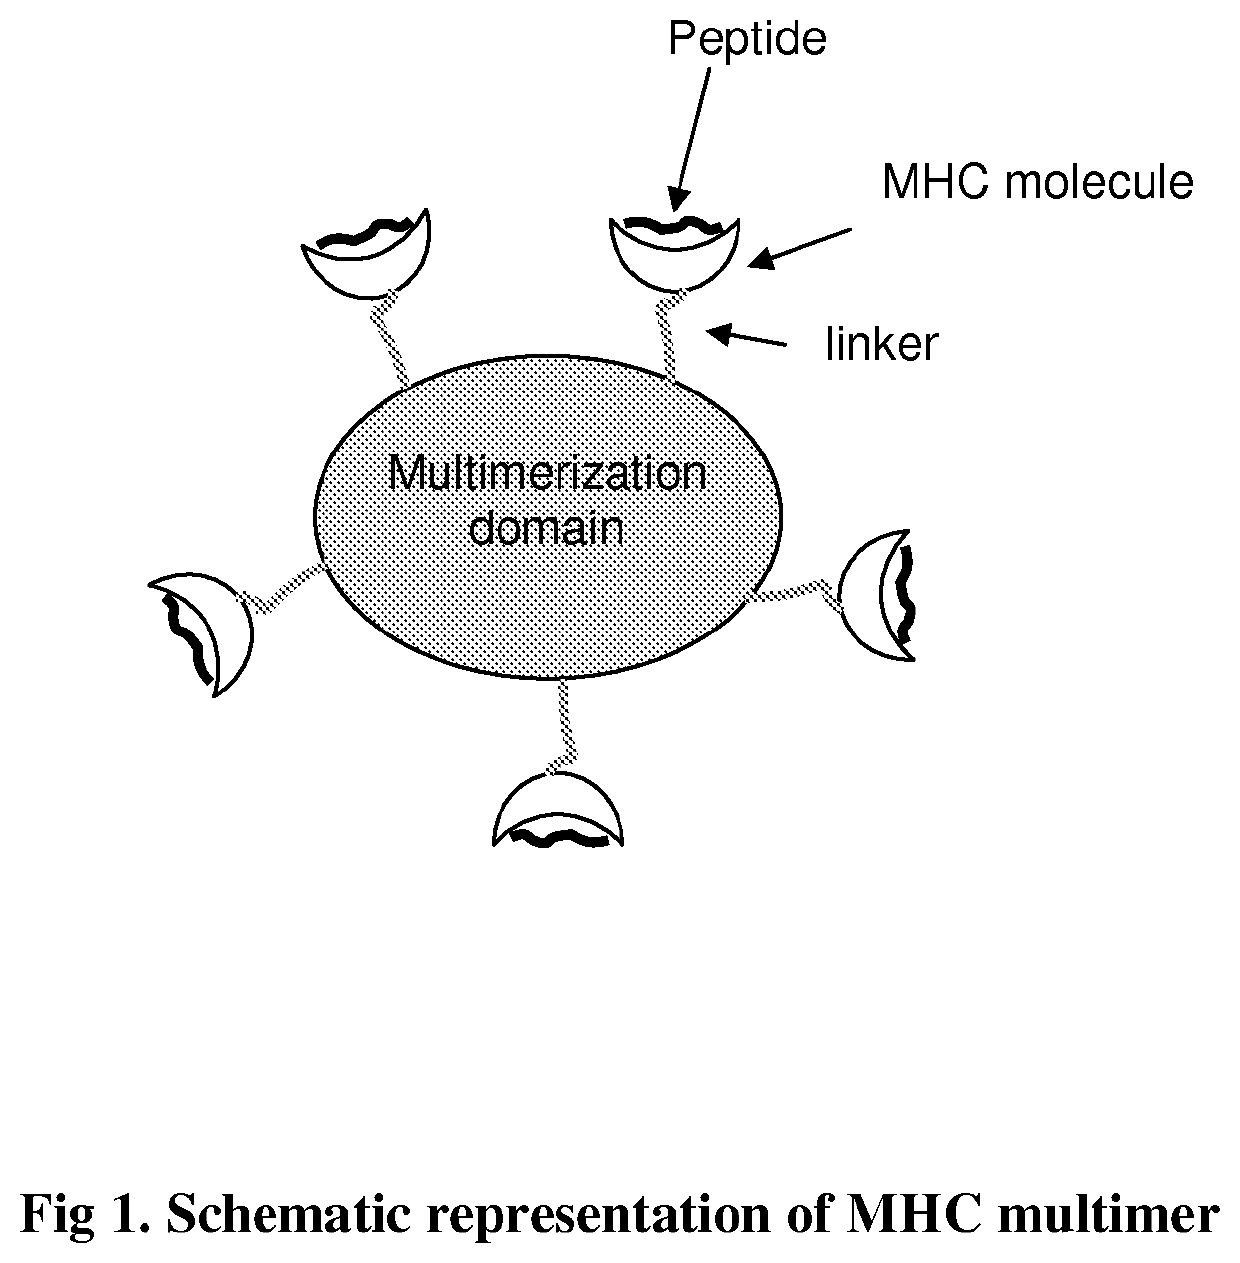 MHC multimers in borrelia diagnostics and disease